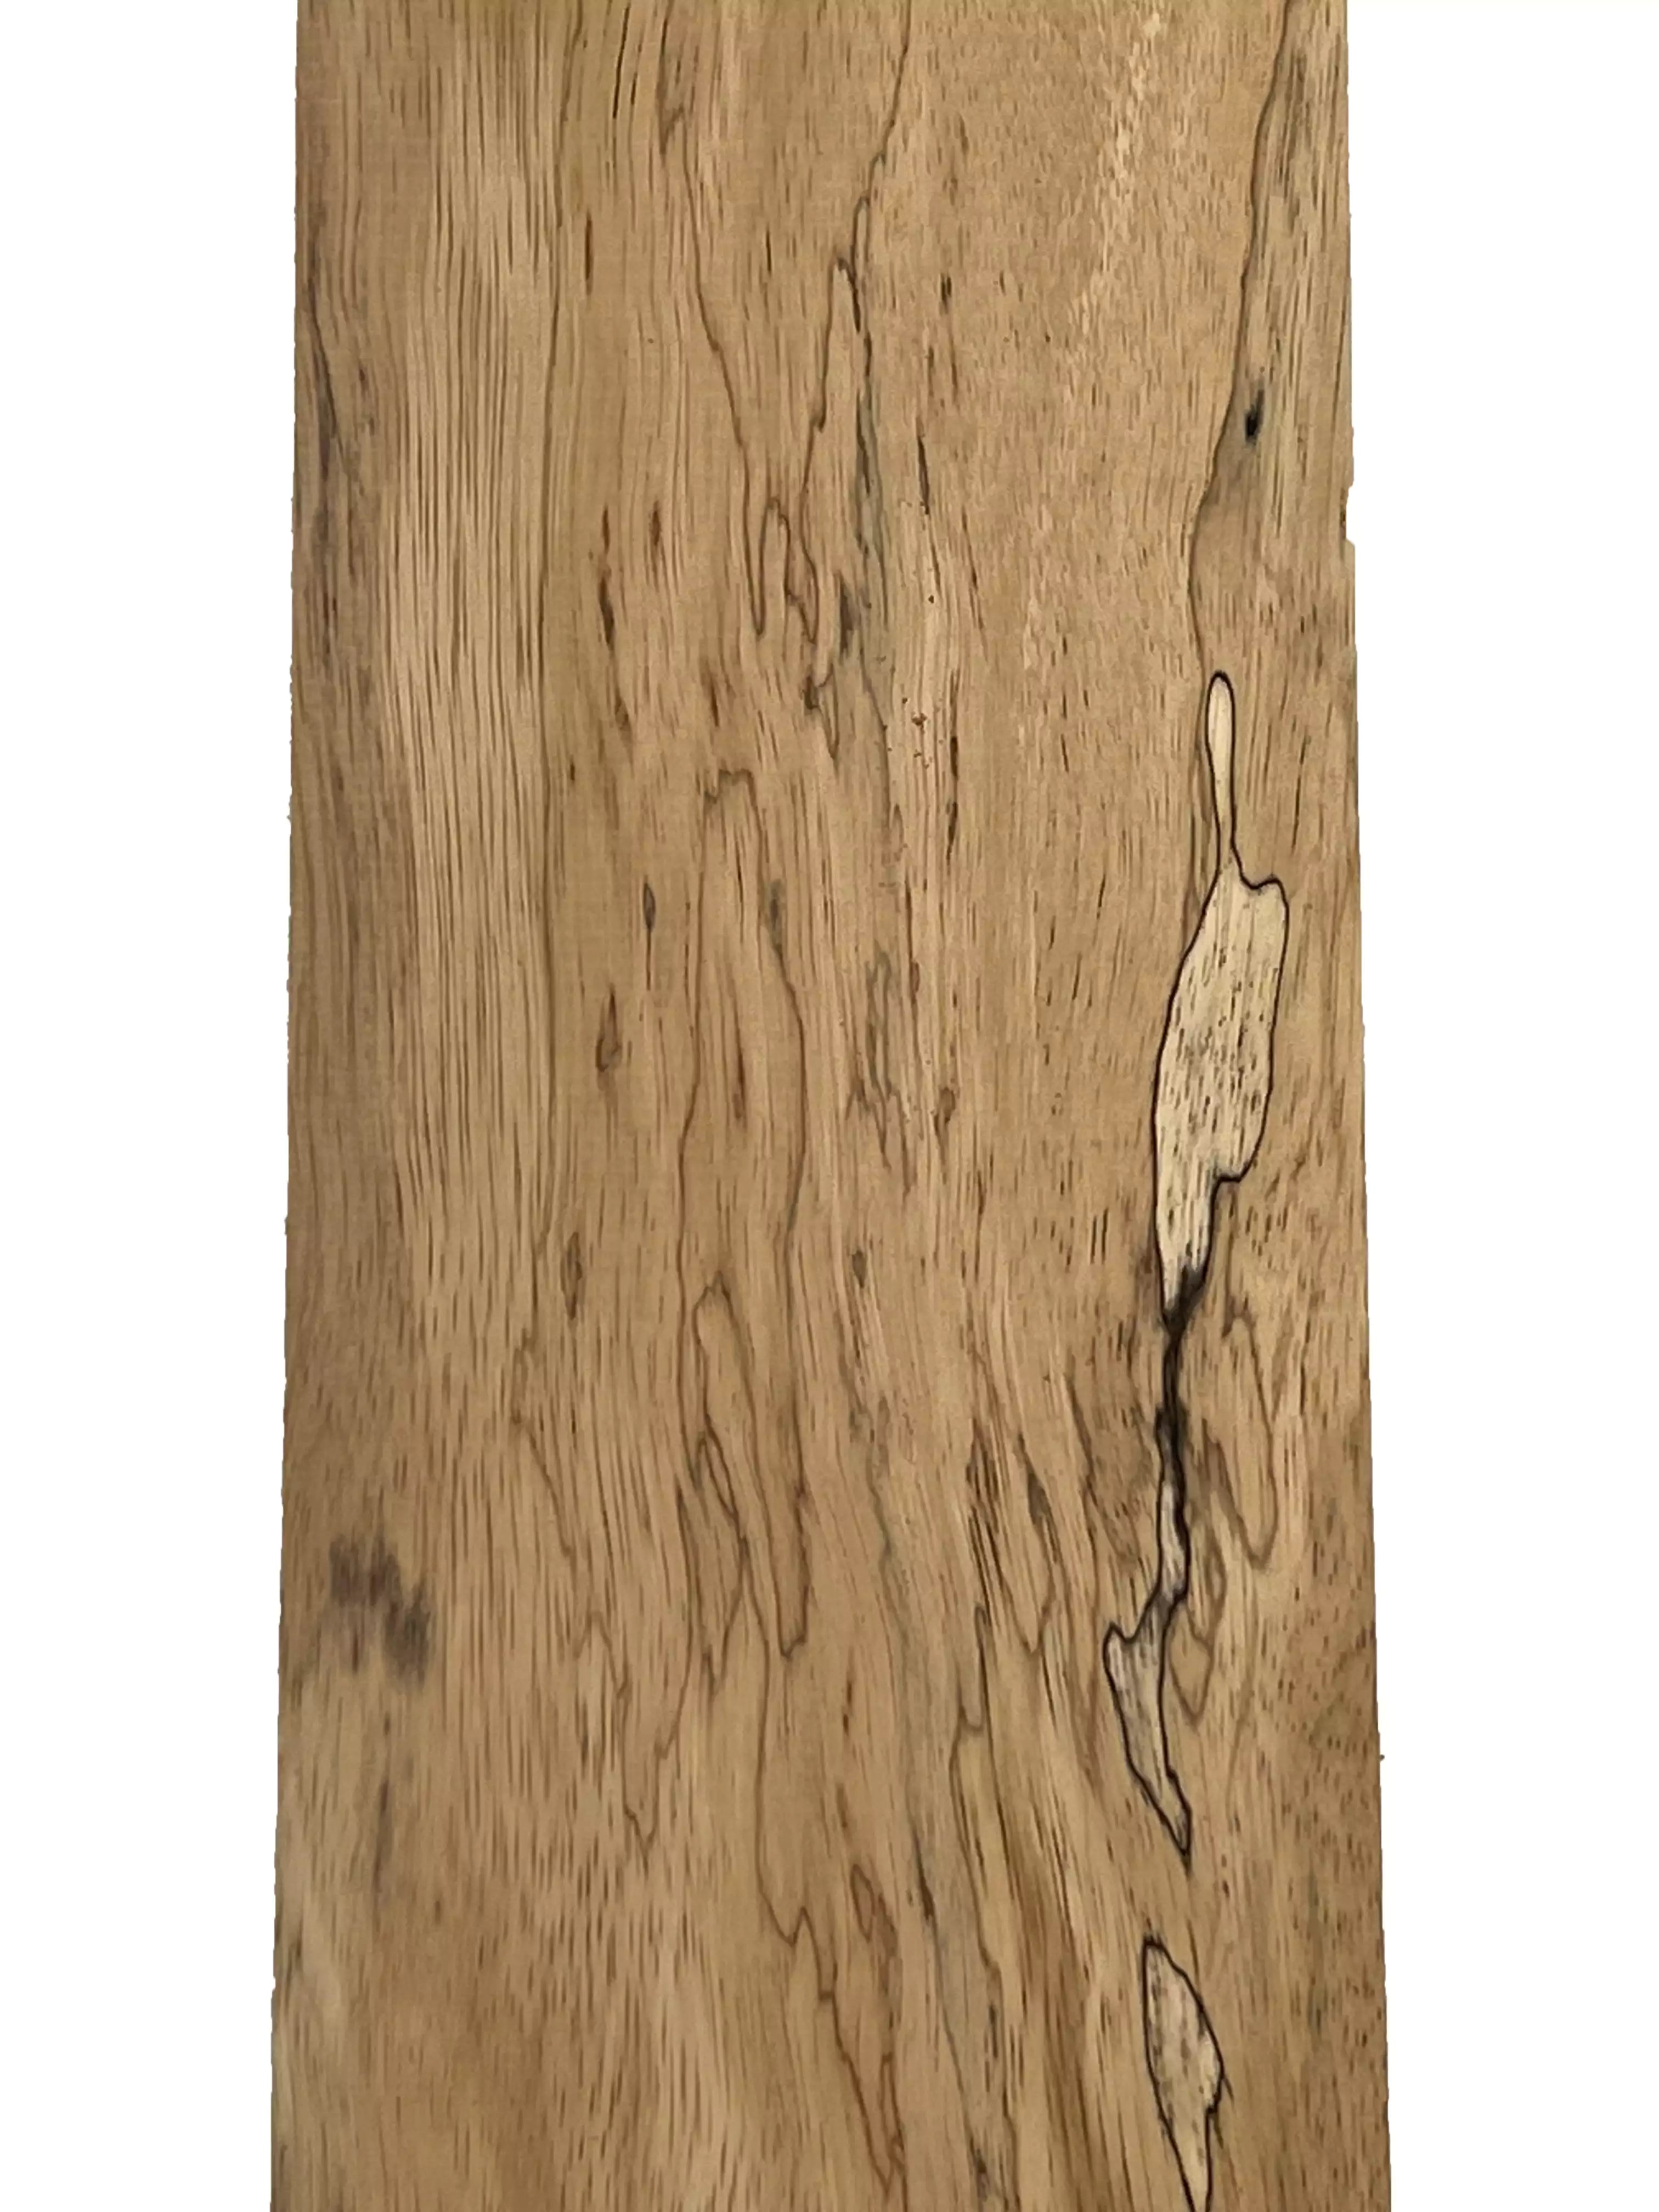 Spalted Tamarind Guitar Fingerboard Blanks - Exotic Wood Zone - Buy online Across USA 